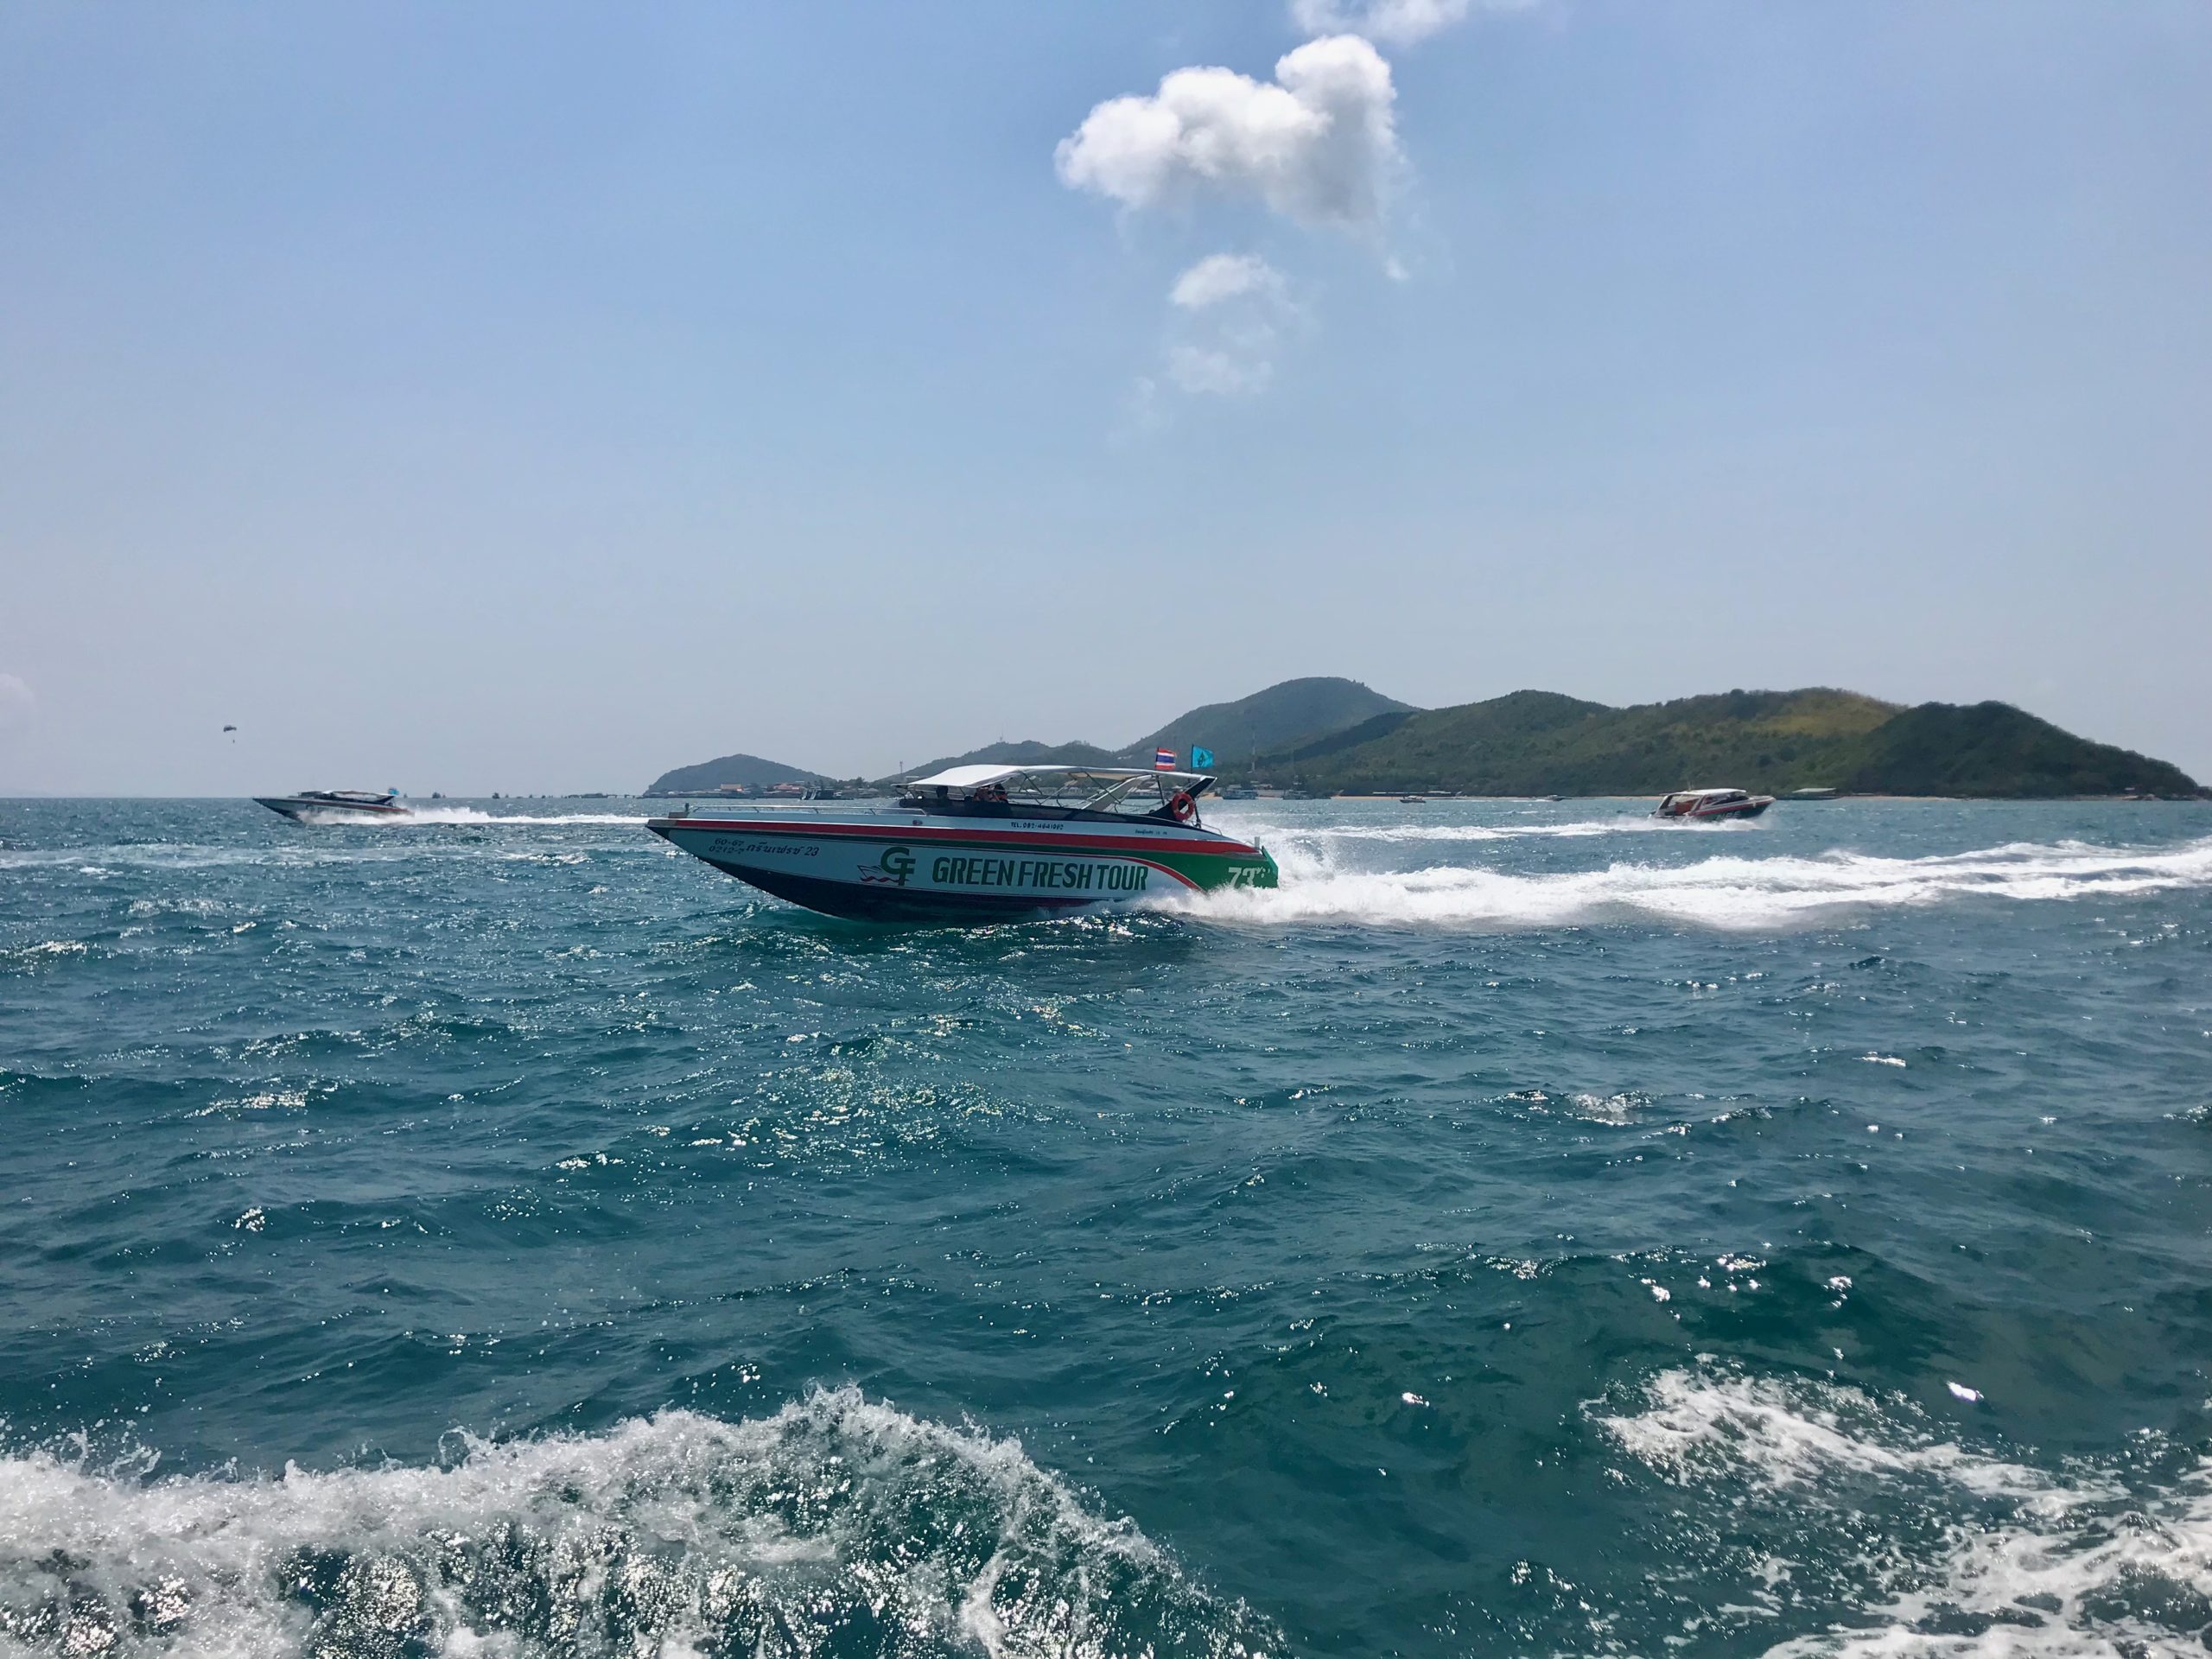 Speedboat naviguant rapidement sur l'eau lors de la traversée entre Pattaya et Koh Larn.